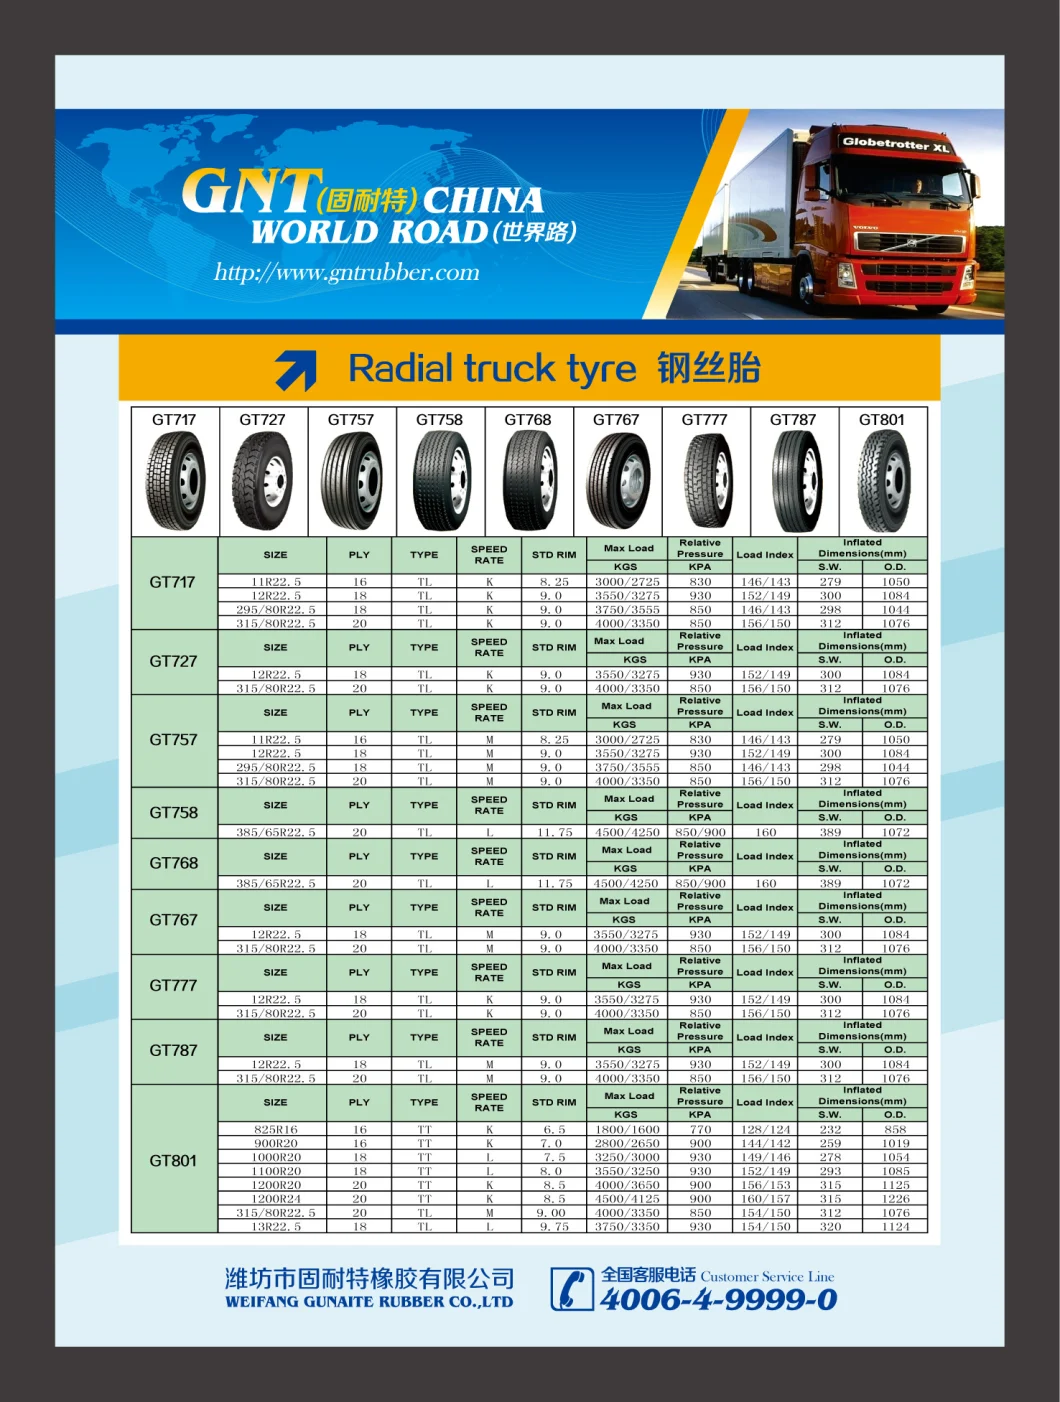 Heavy Duty Truck Tire, Radial Truck Tire (11R22.5)